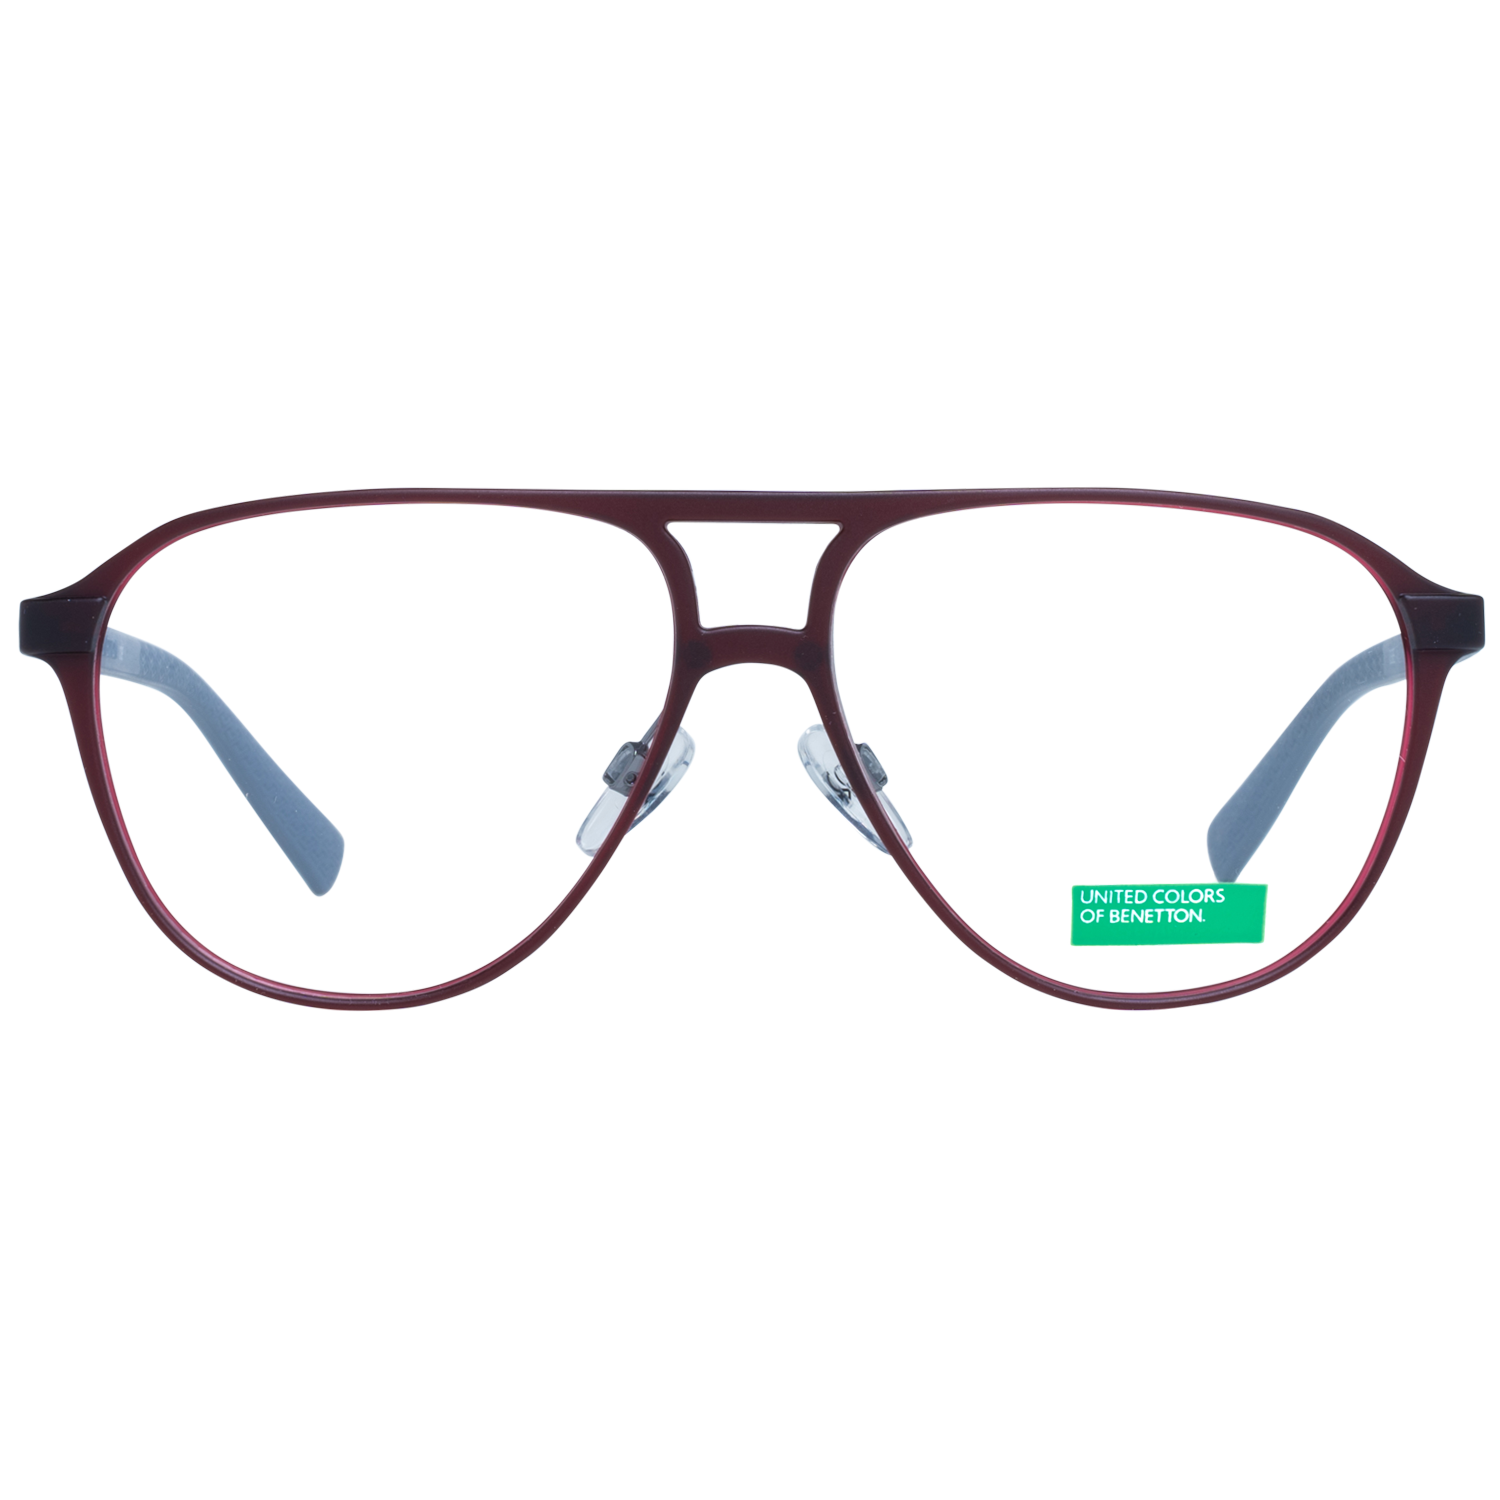 Benetton Frames Benetton Glasses Frames BEO1008 252 56 Eyeglasses Eyewear UK USA Australia 